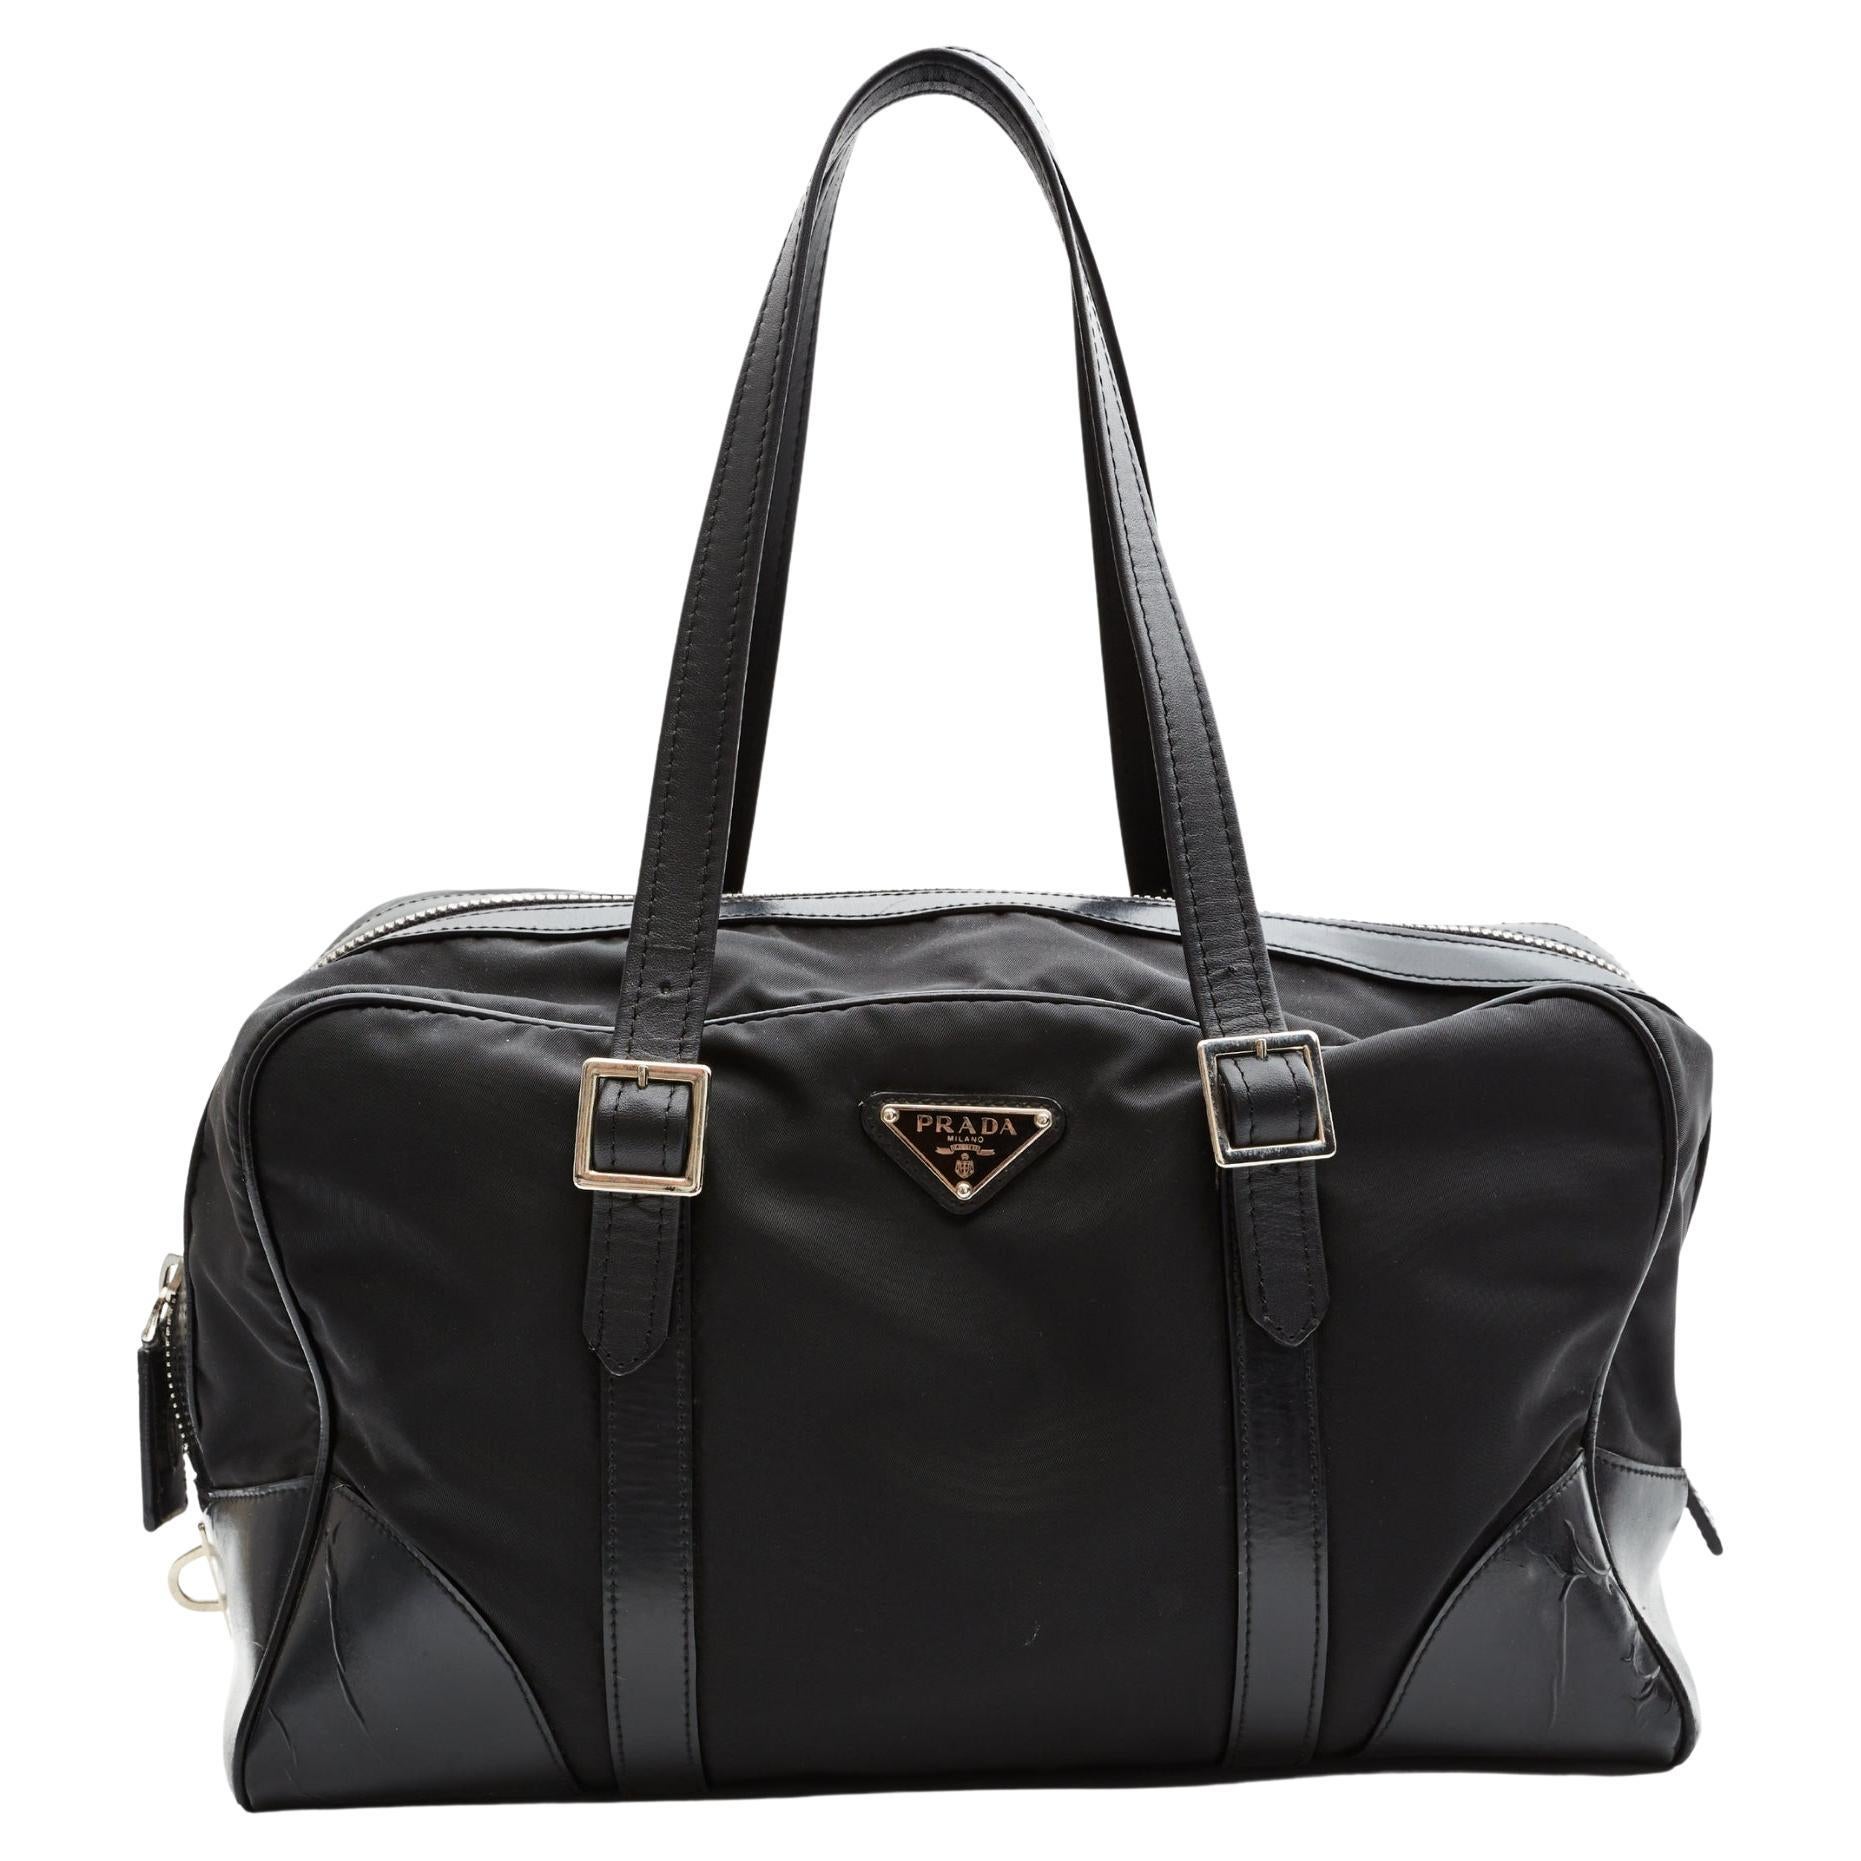 Prada Duffle Bag - 3 For Sale on 1stDibs | prada gym bag, duffle